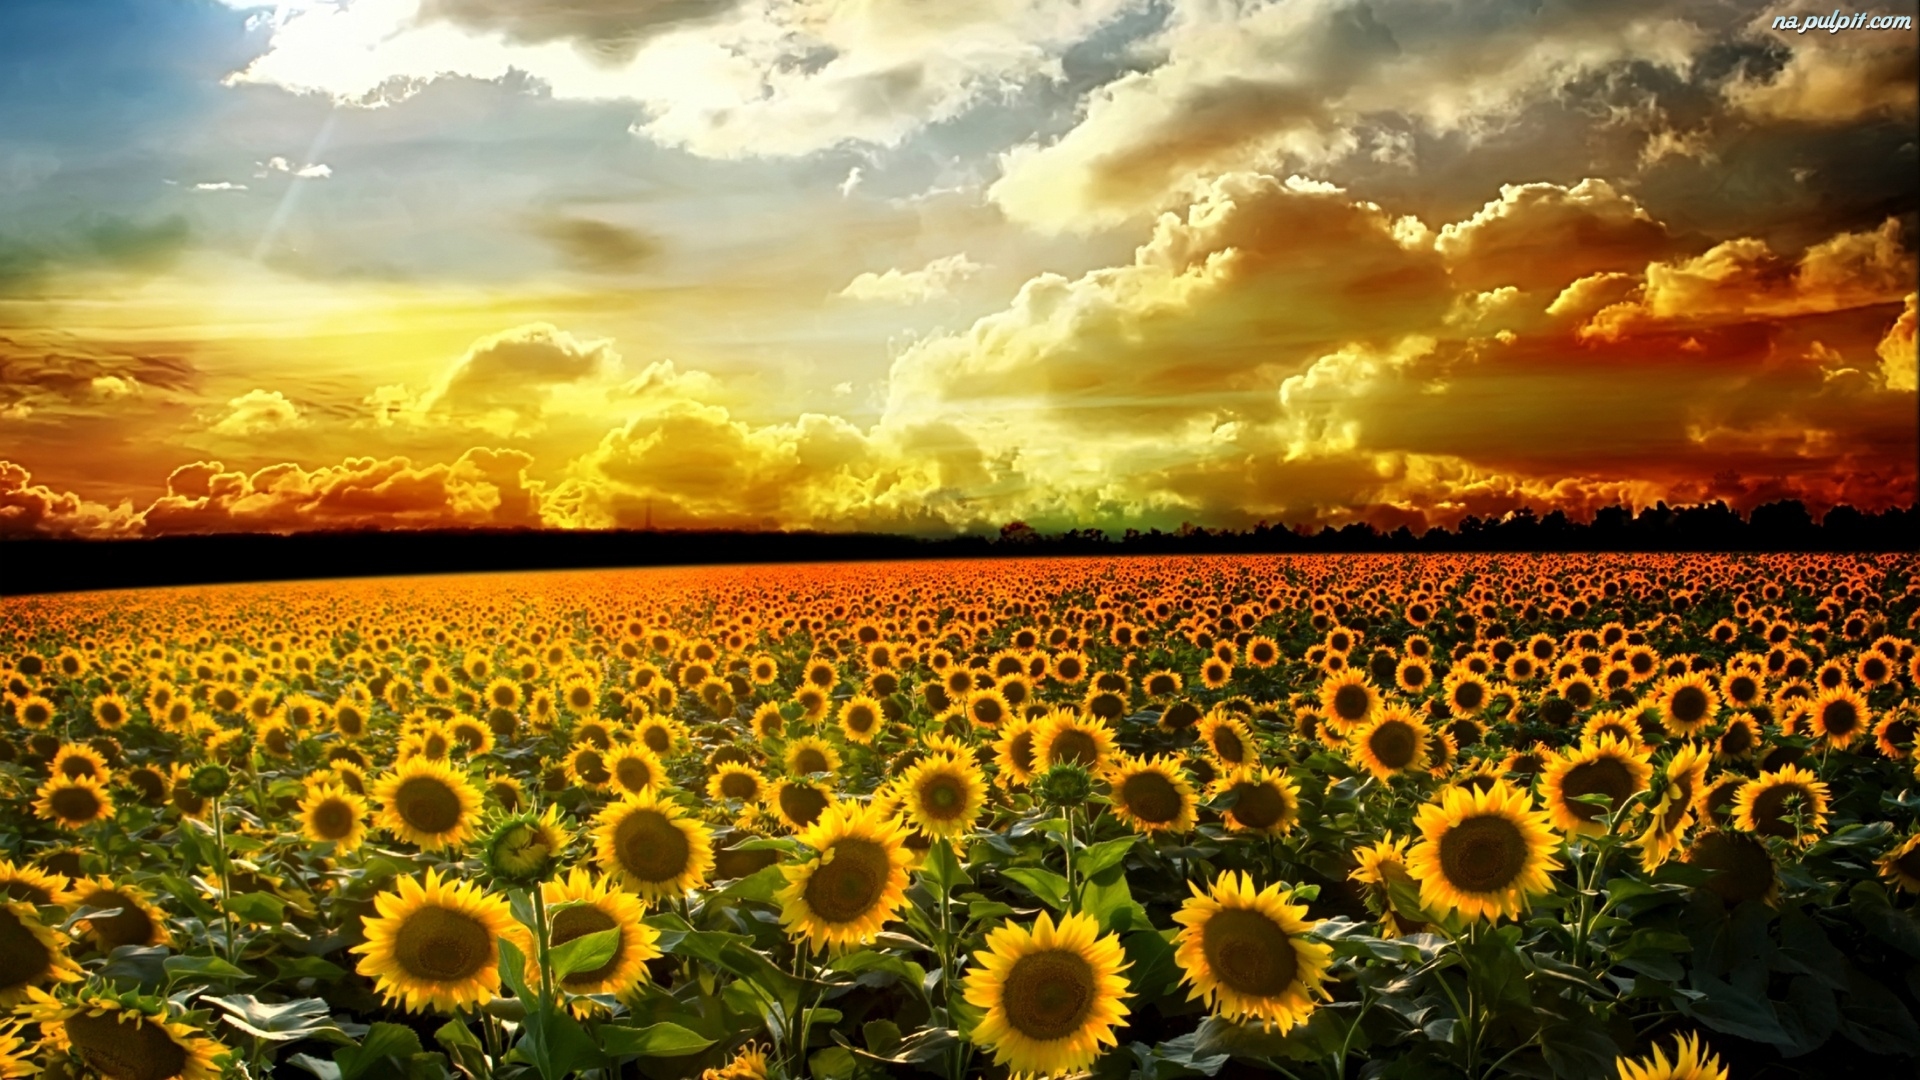 sindri wallpaper,sunflower,sky,field,flower,nature